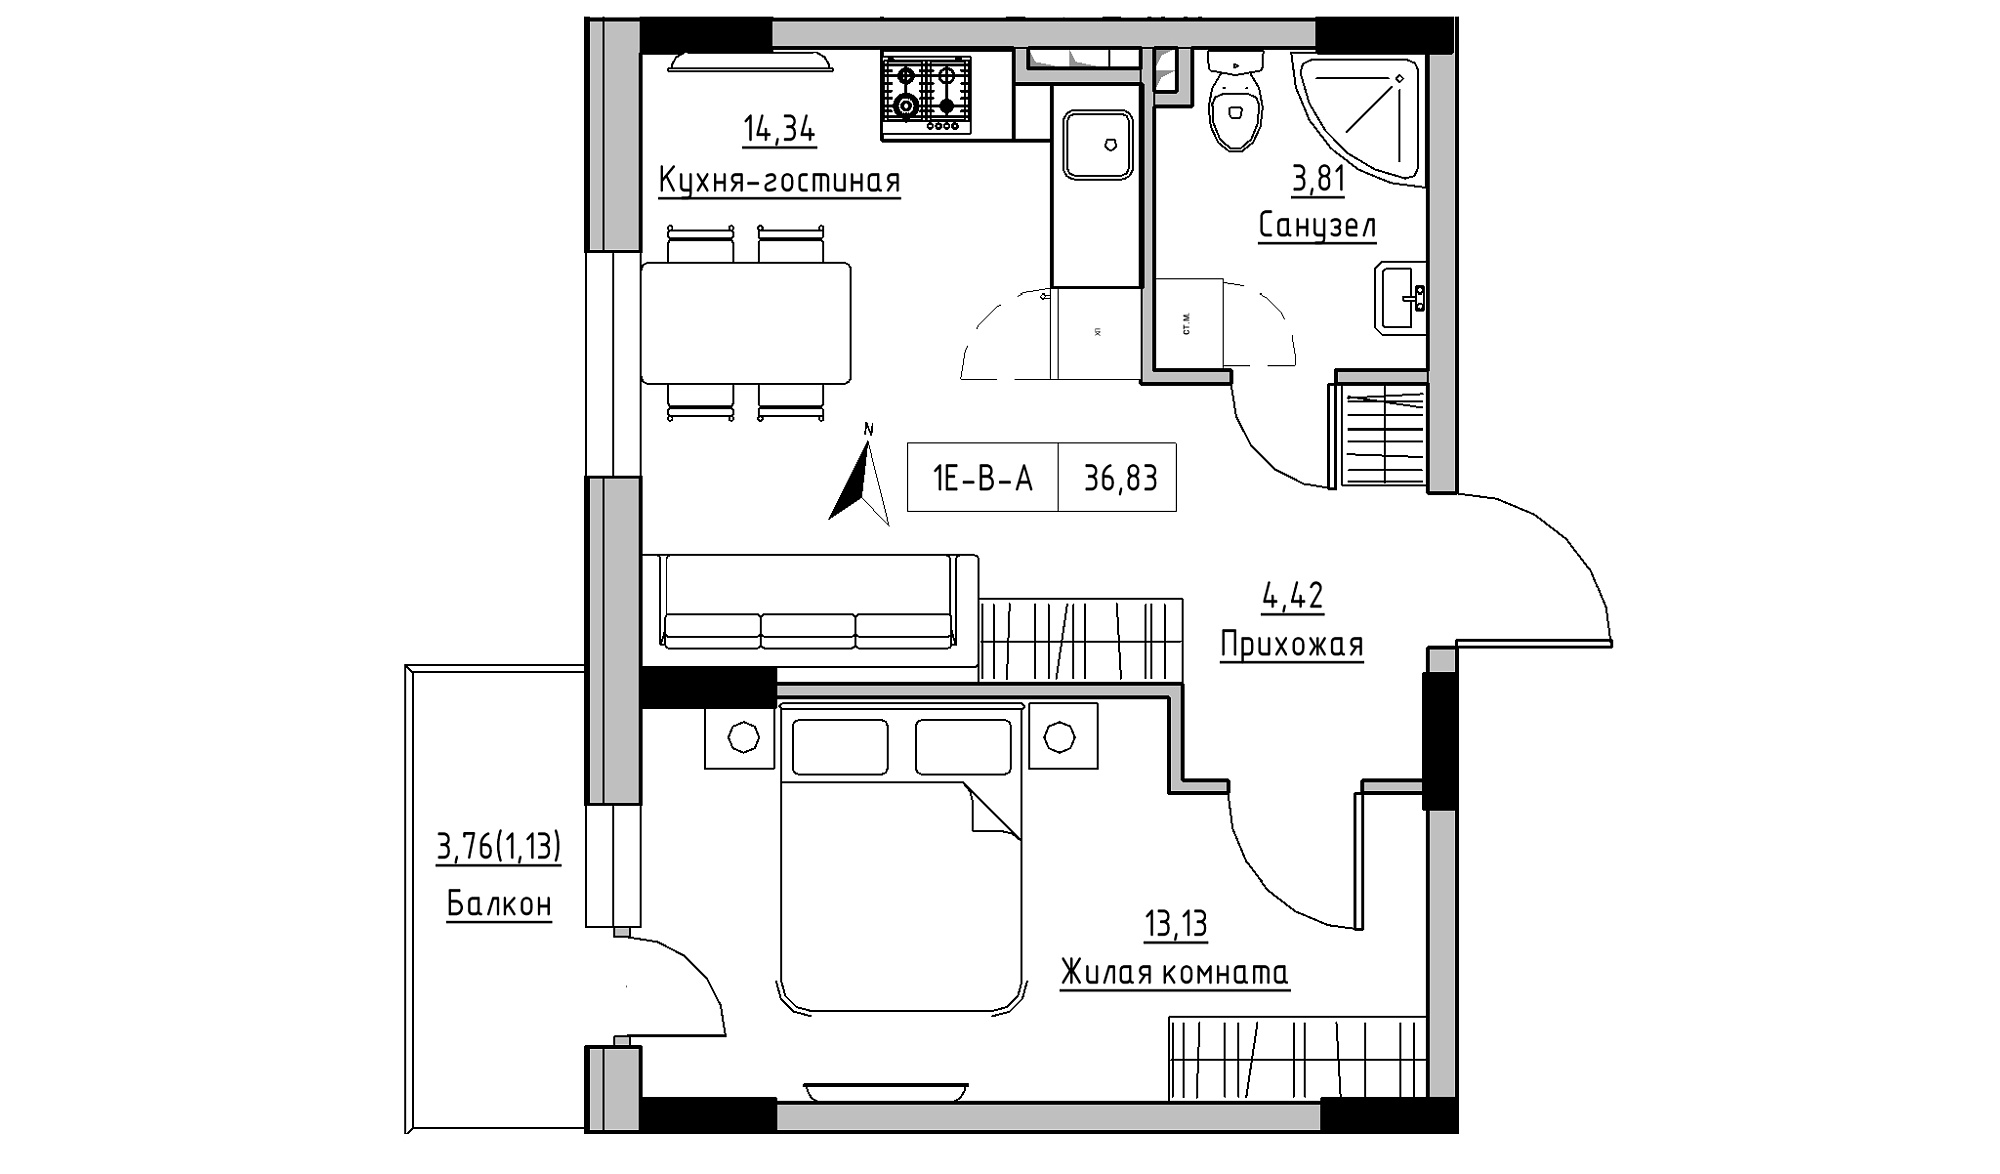 Планування 1-к квартира площею 36.83м2, KS-025-02/0004.